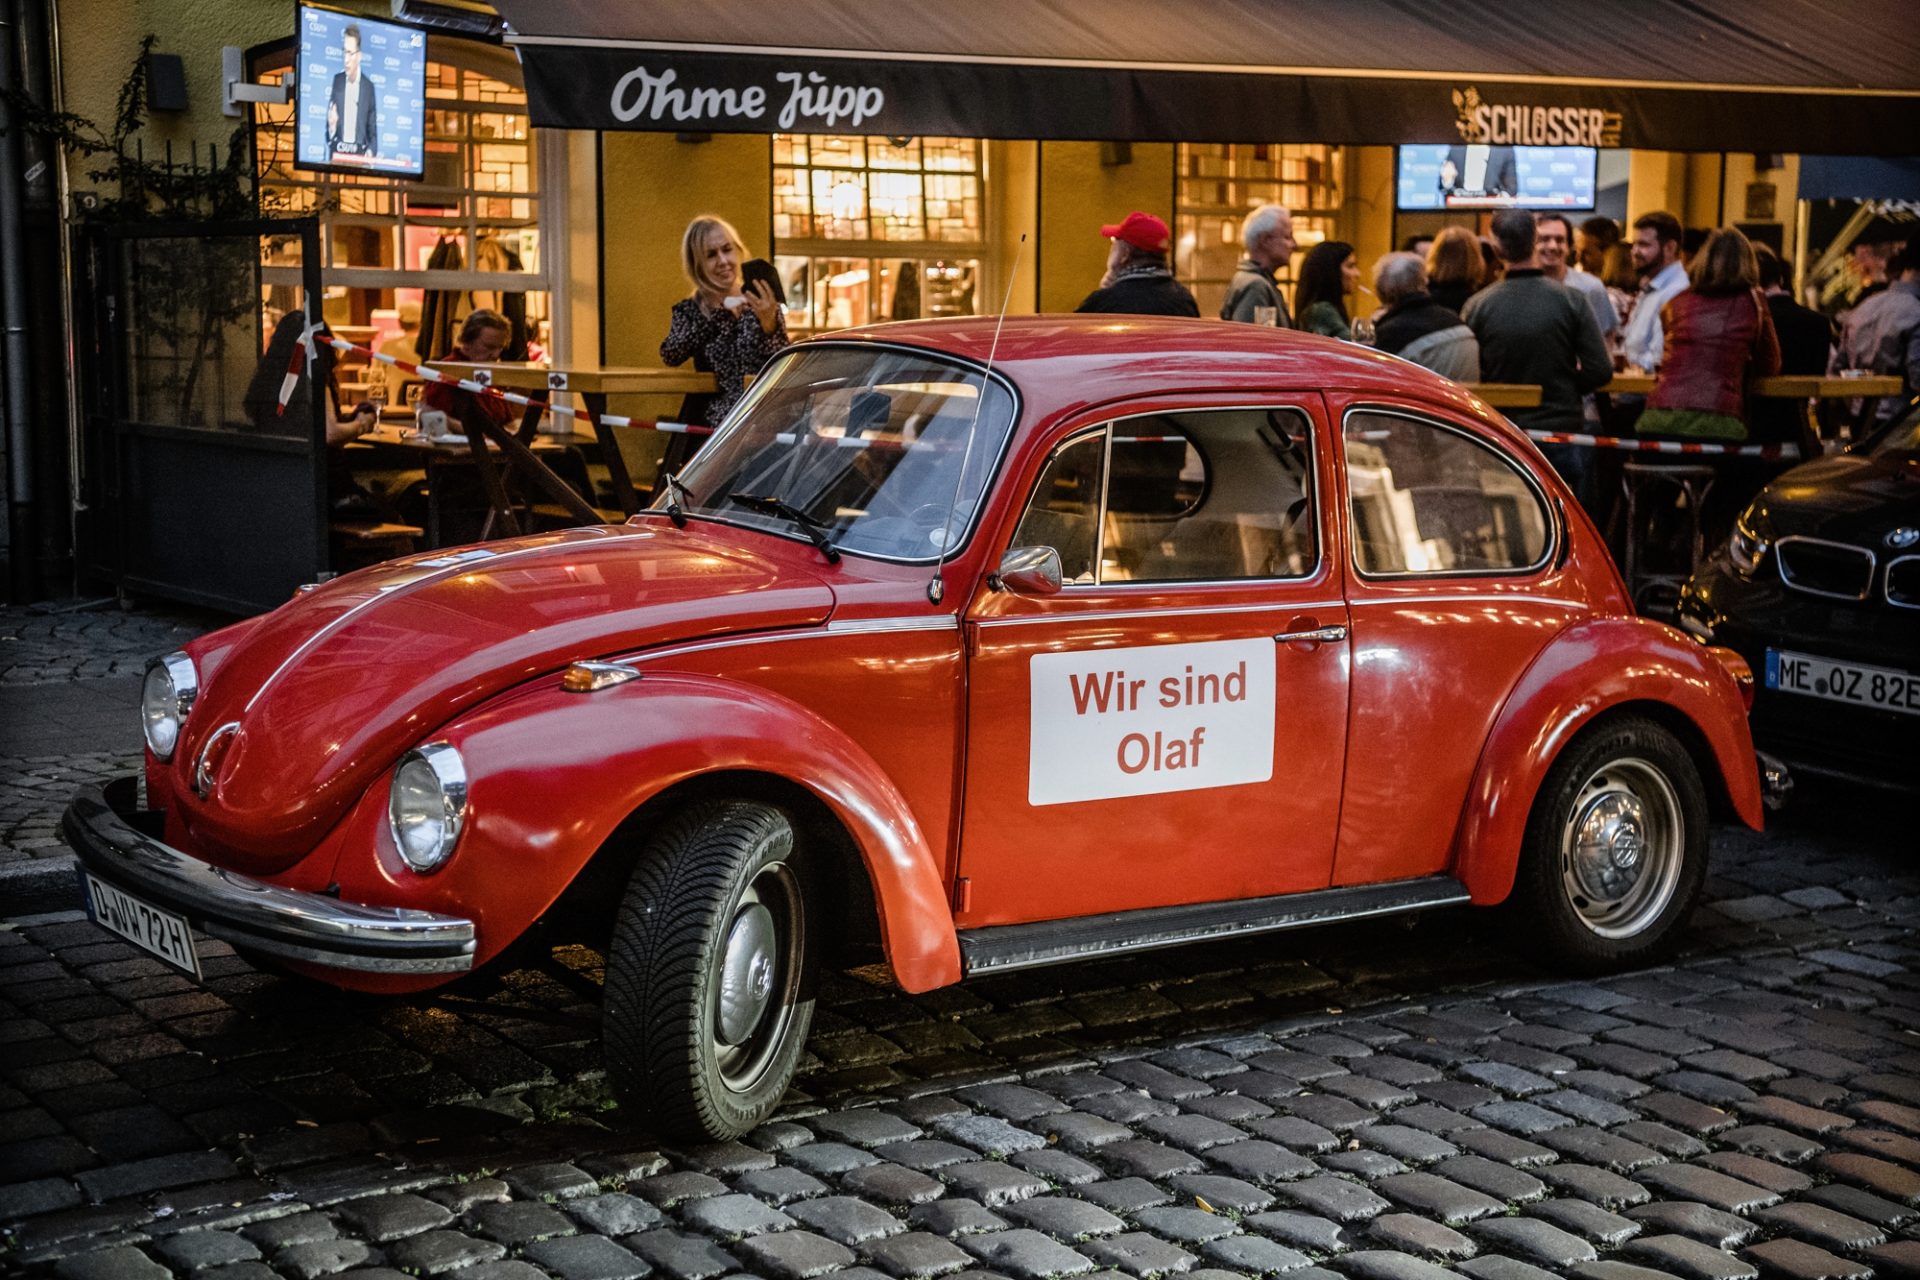 Die Düsseldorfer SPD feierte den Wahlabend in der Altstadtkneipe "Ohme Jupp". Davor stand dieser rote VW Käfer mit der Aufschrift "Wir sind Olaf". Foto: Andreas Endermann